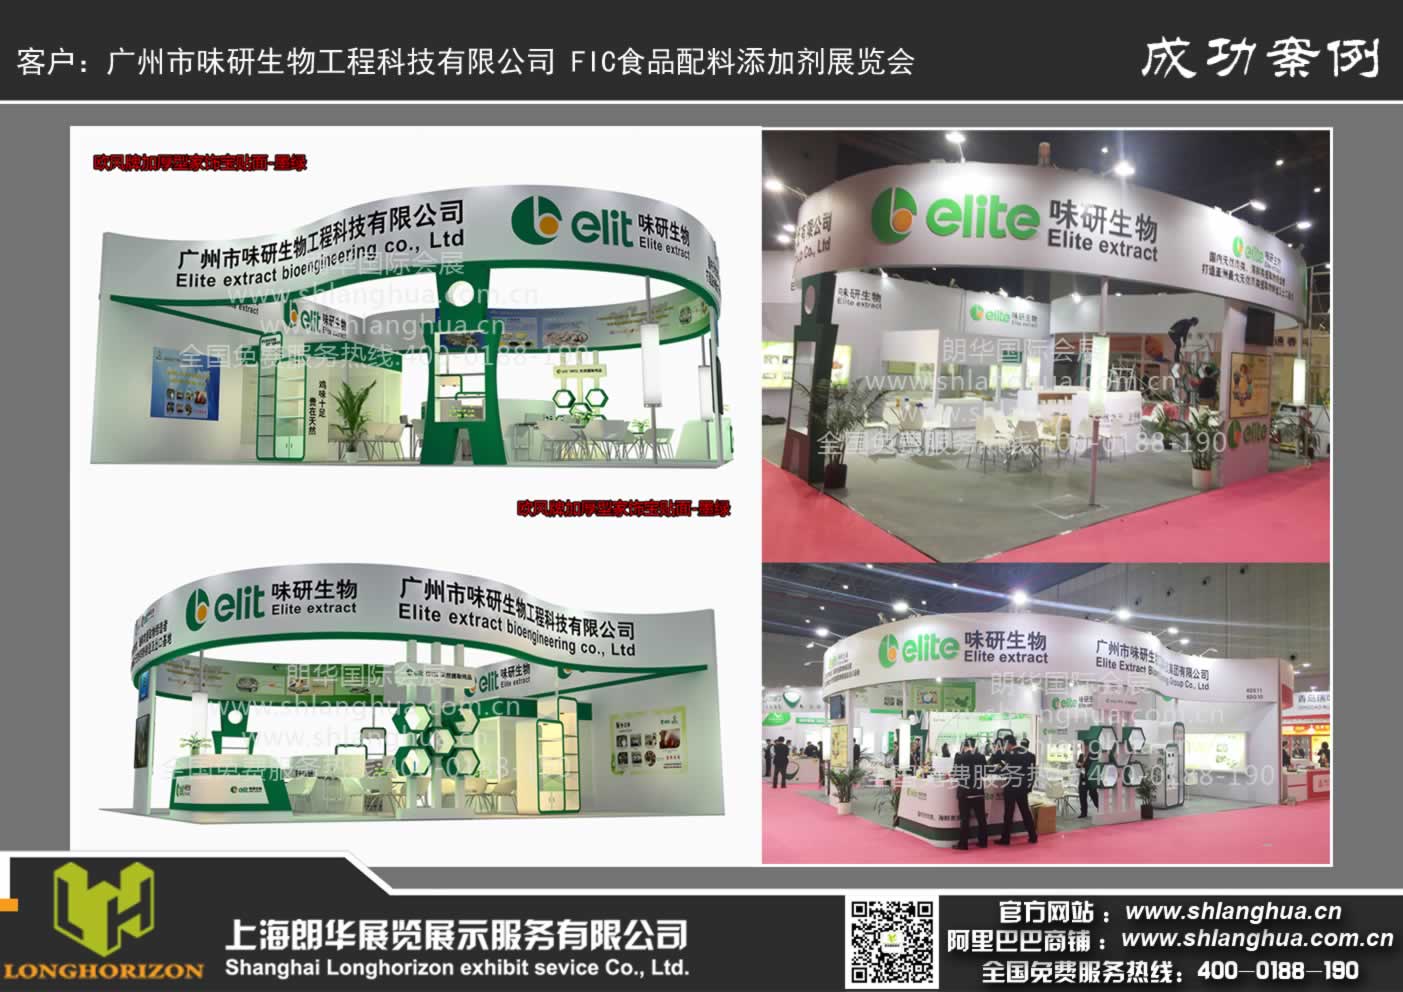 广州市味研生物工程科技有限公司 FIC食品配料添加剂展览会